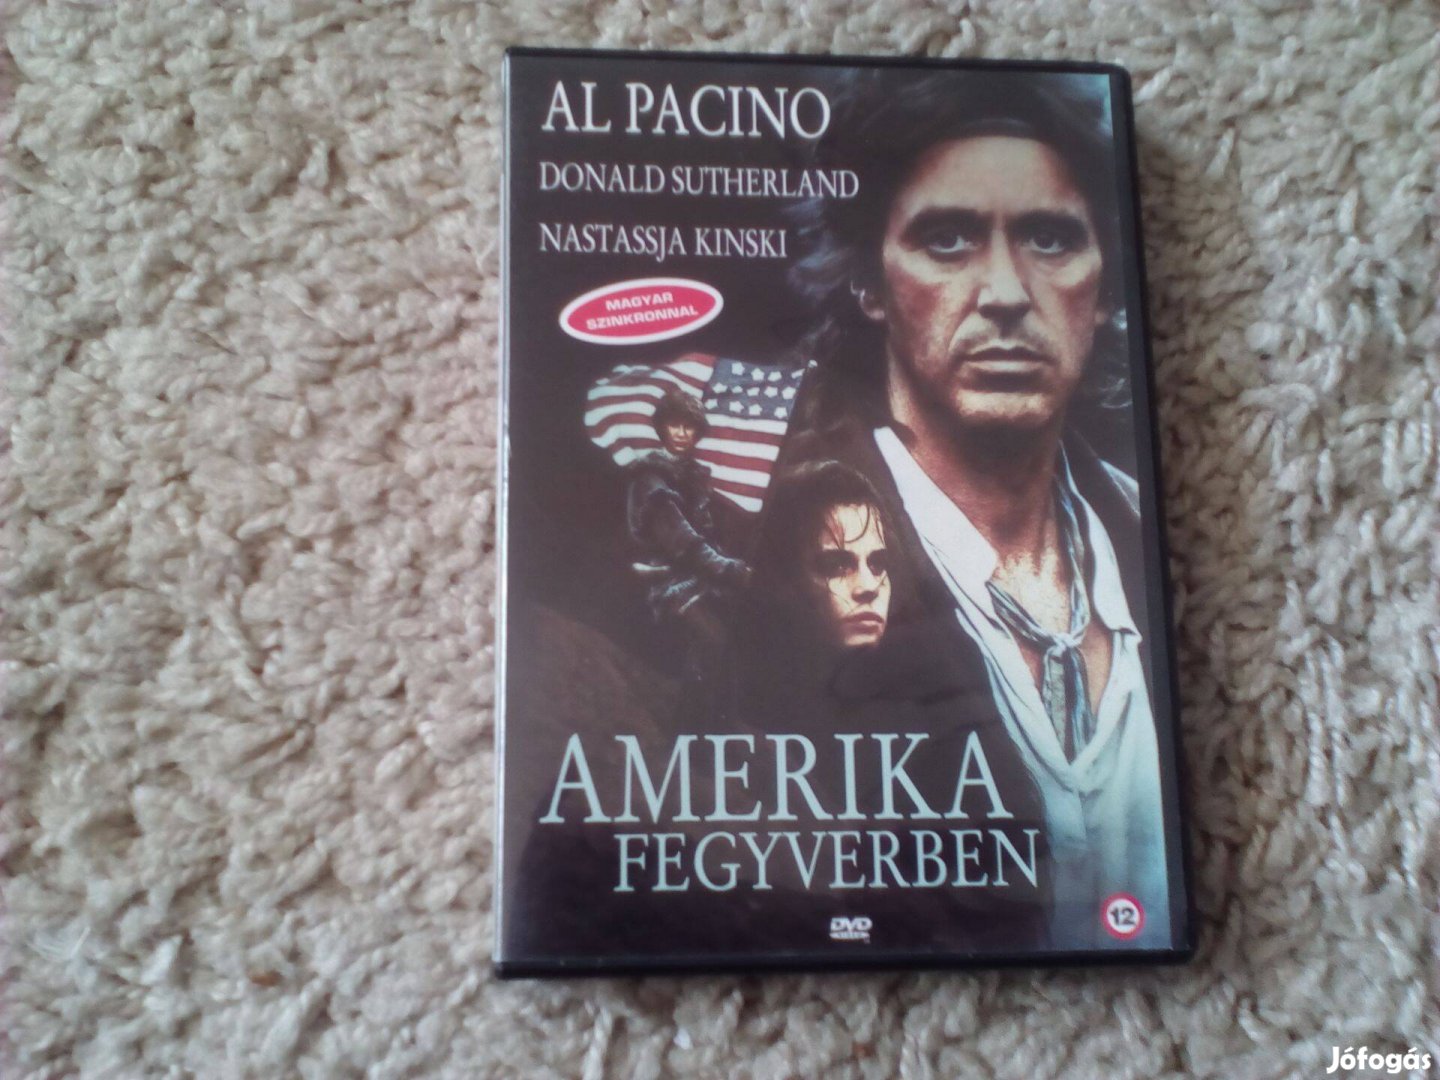 Amerika fegyverben - eredeti DVD